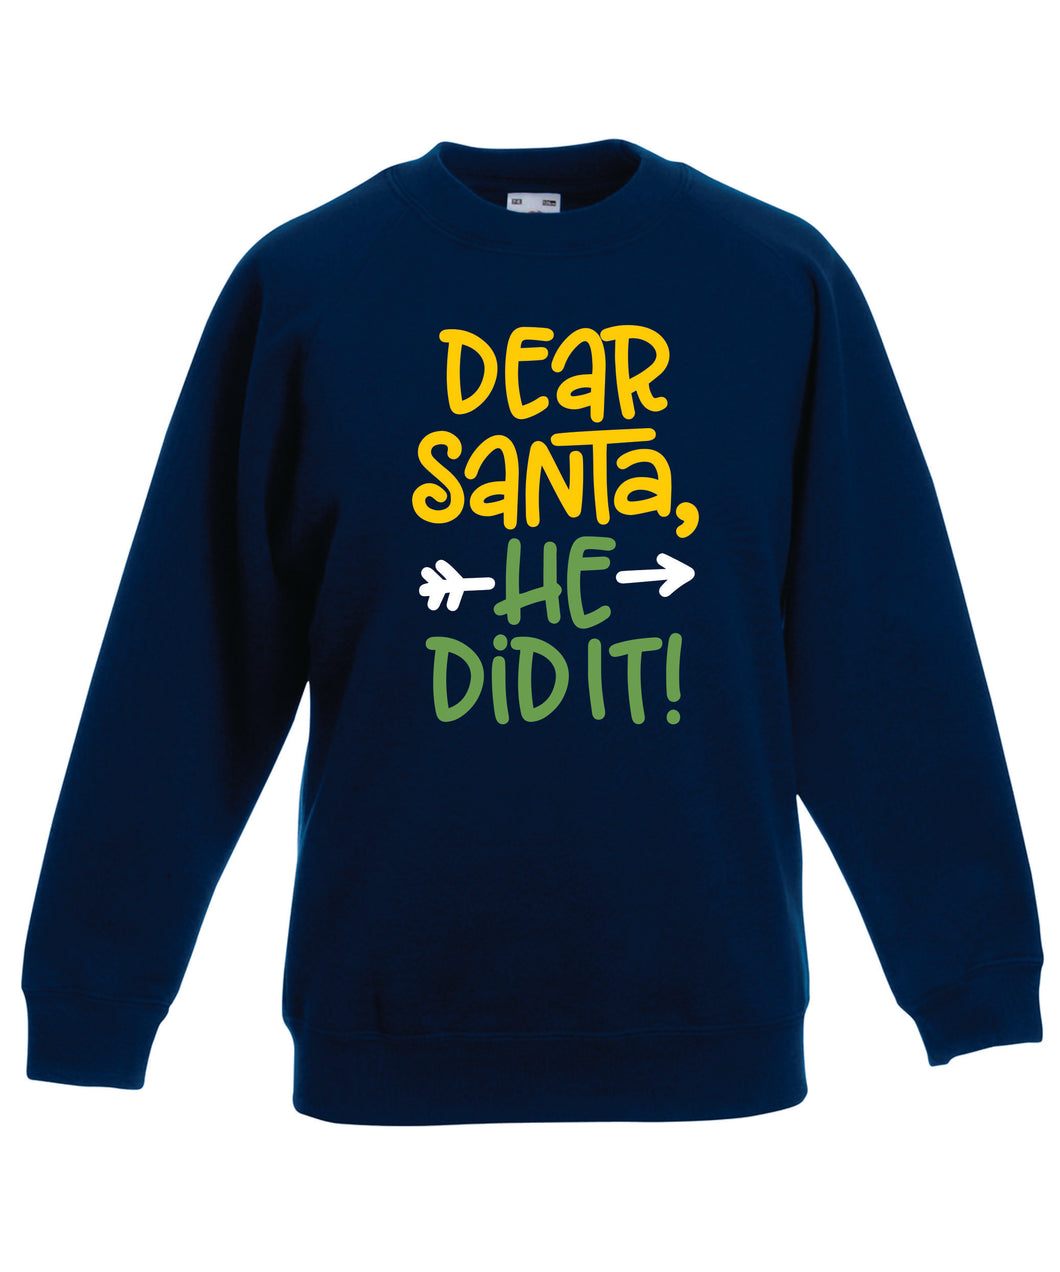 Kids Christmas Sweatshirt (He Did It, Option 2)